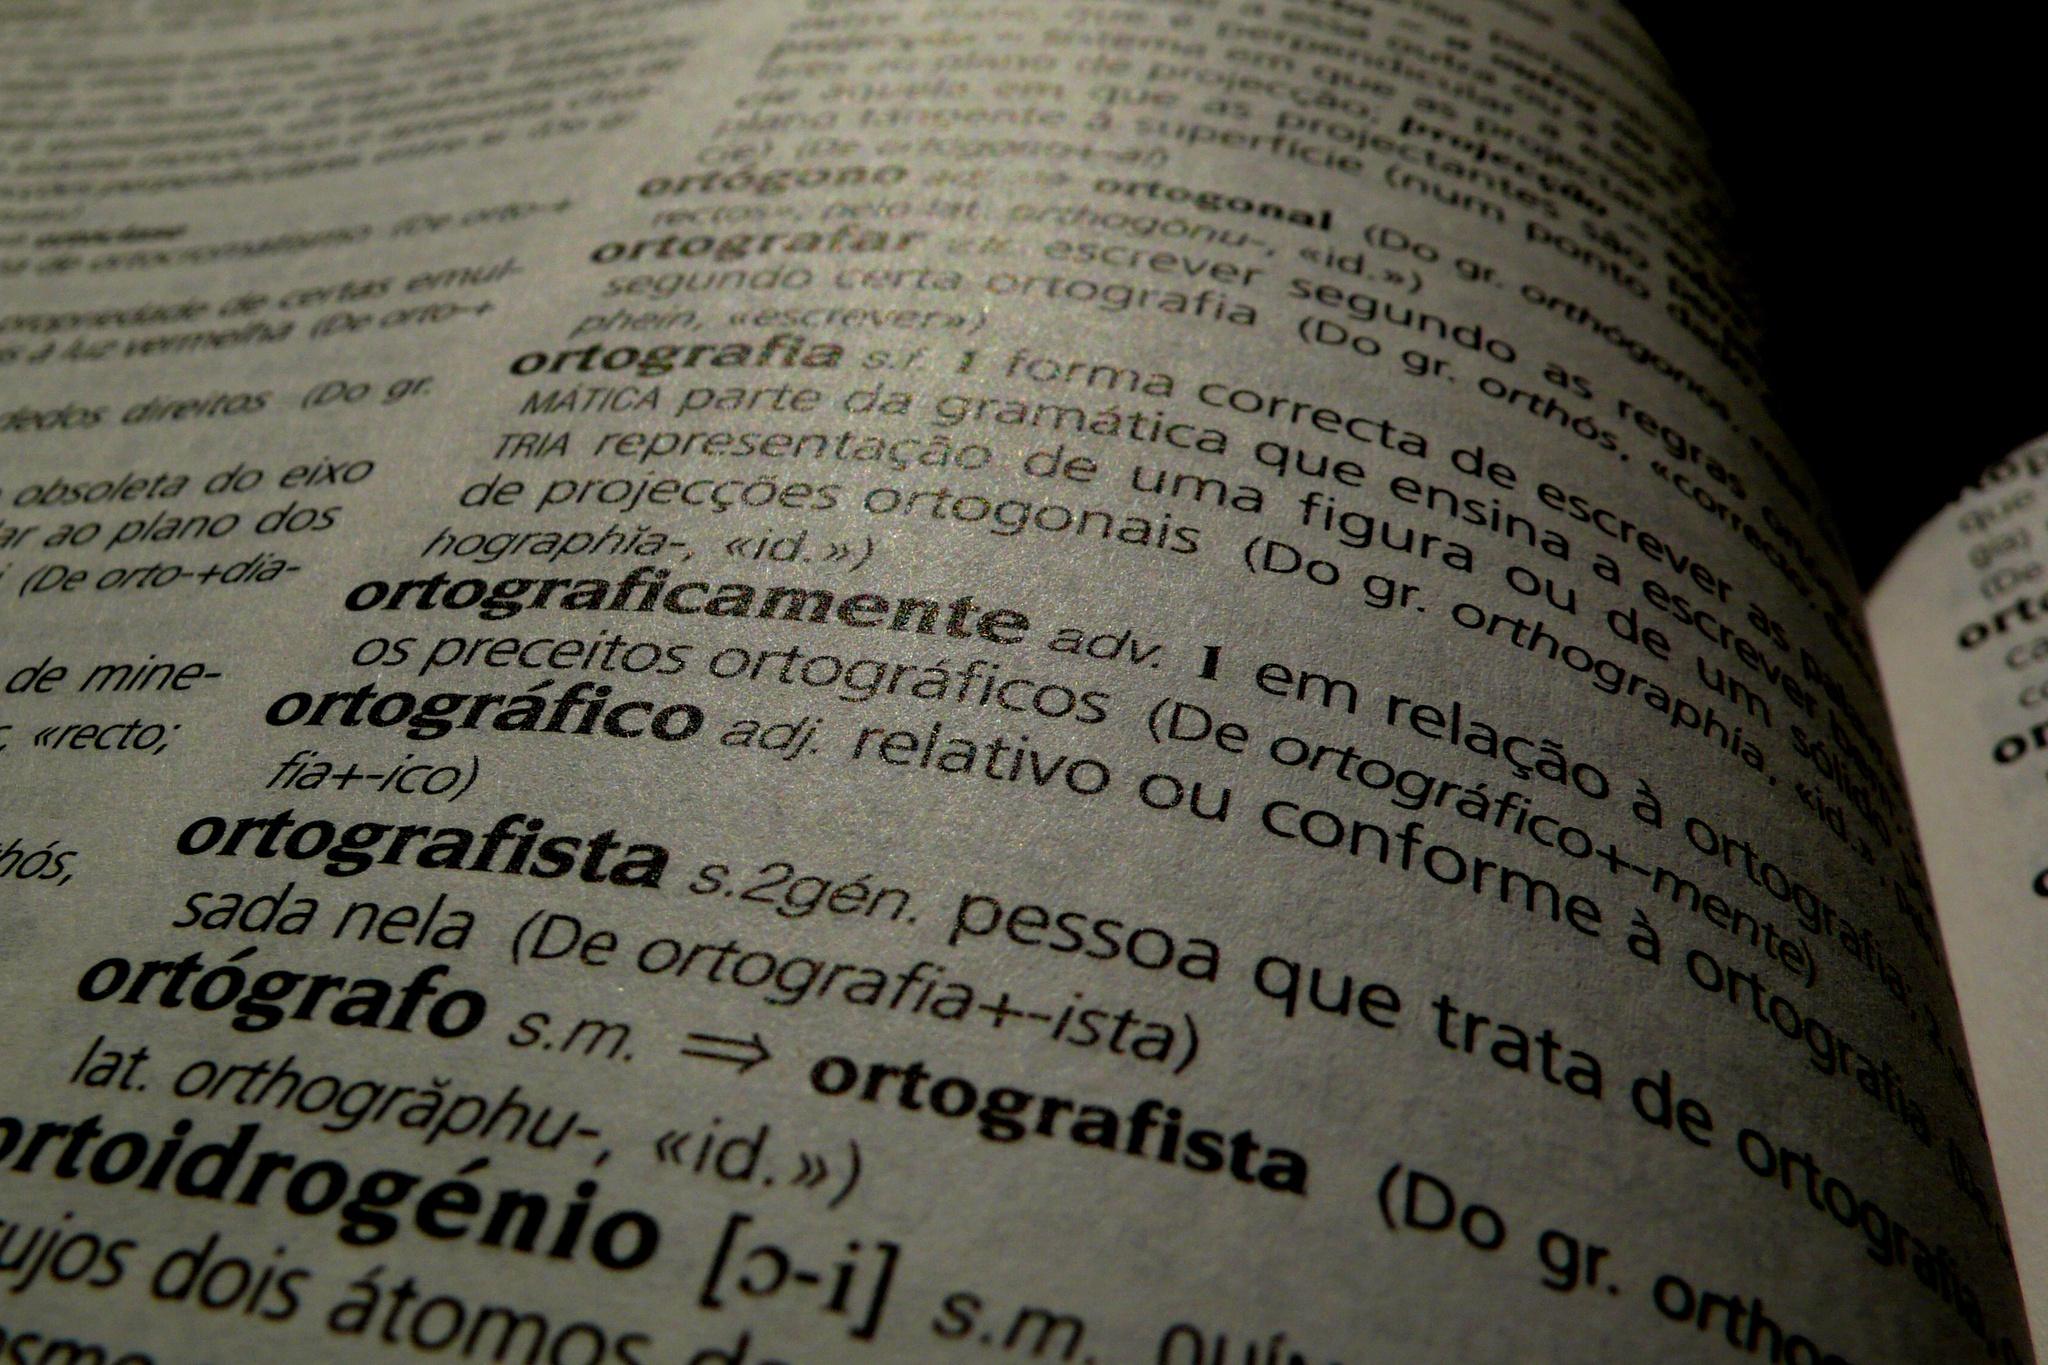 Ameaço - Dicio, Dicionário Online de Português